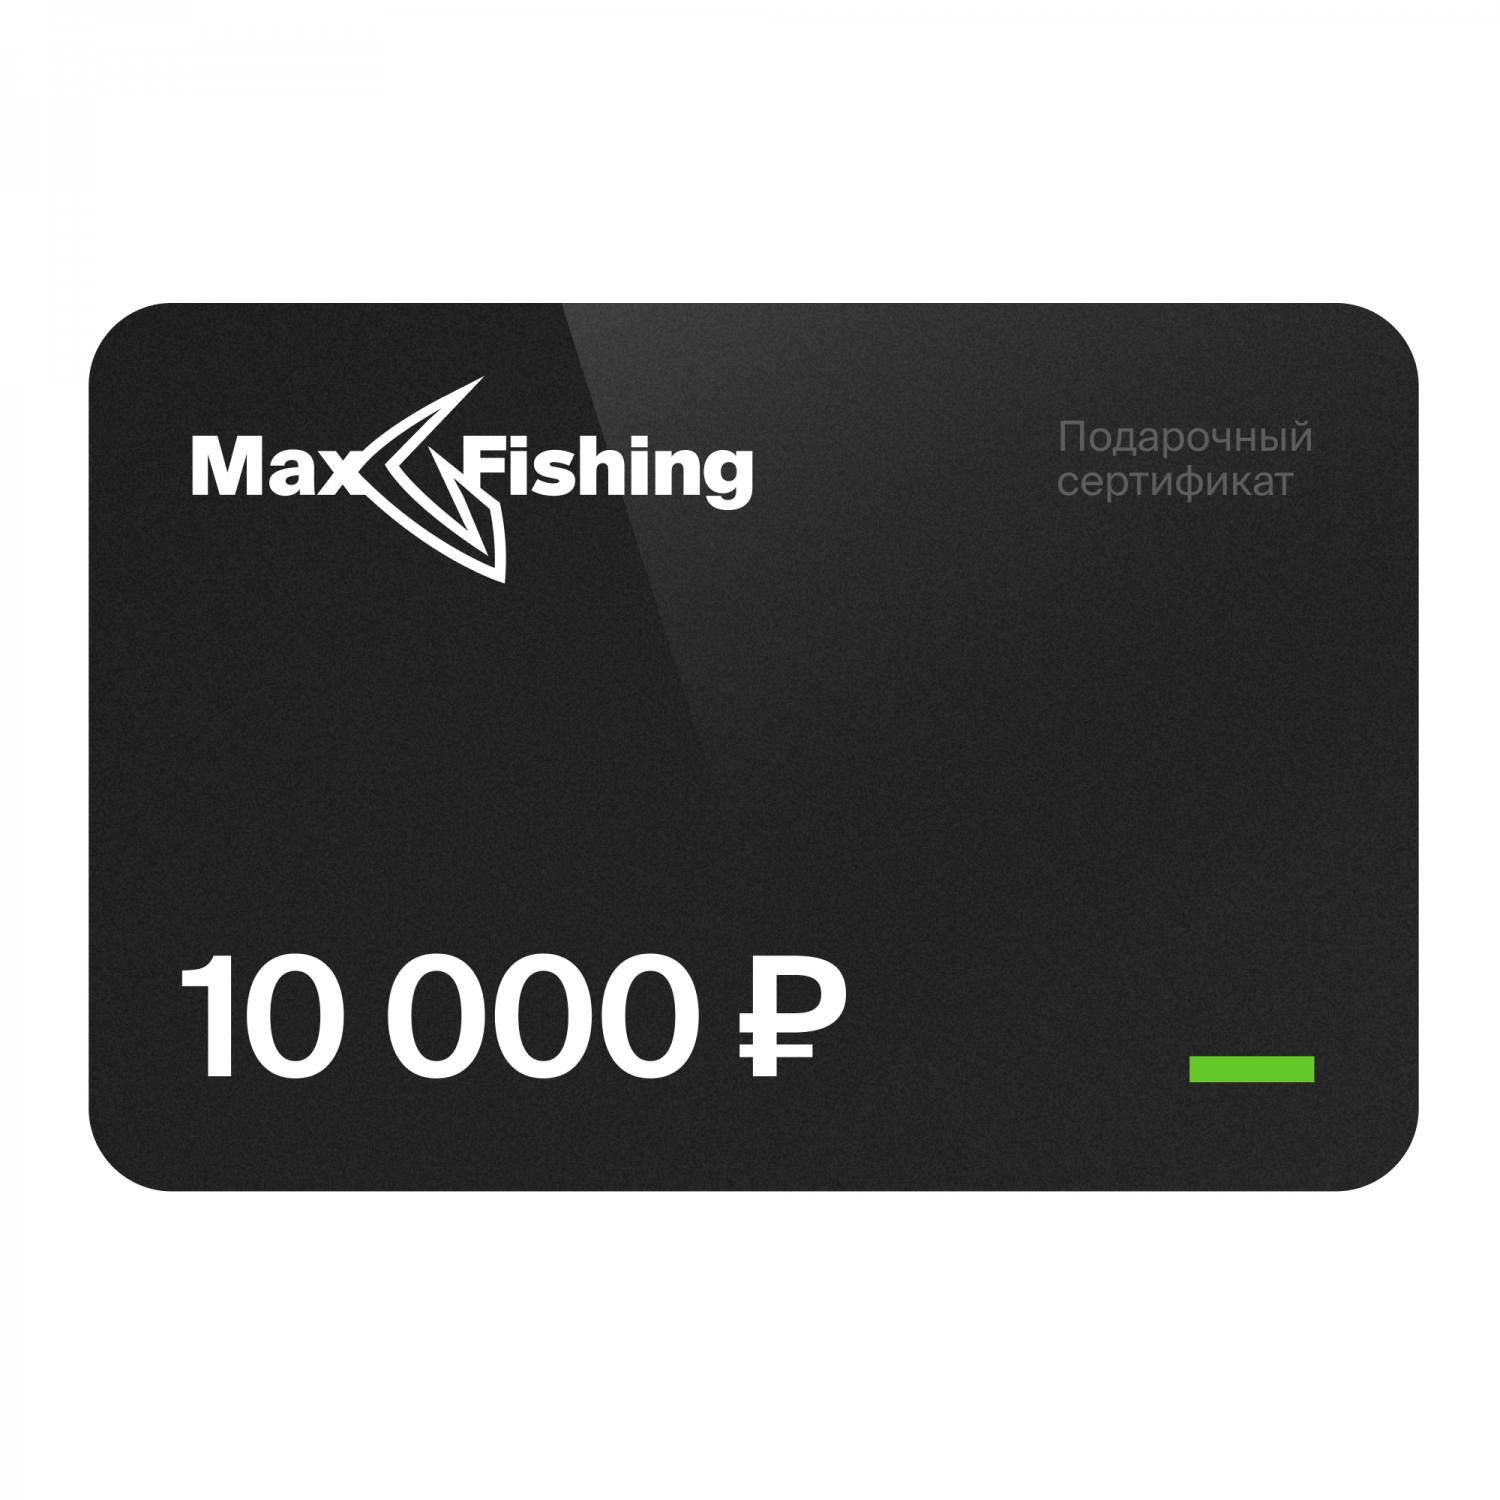 Подарочный сертификат MaxFishing 10 000 ₽